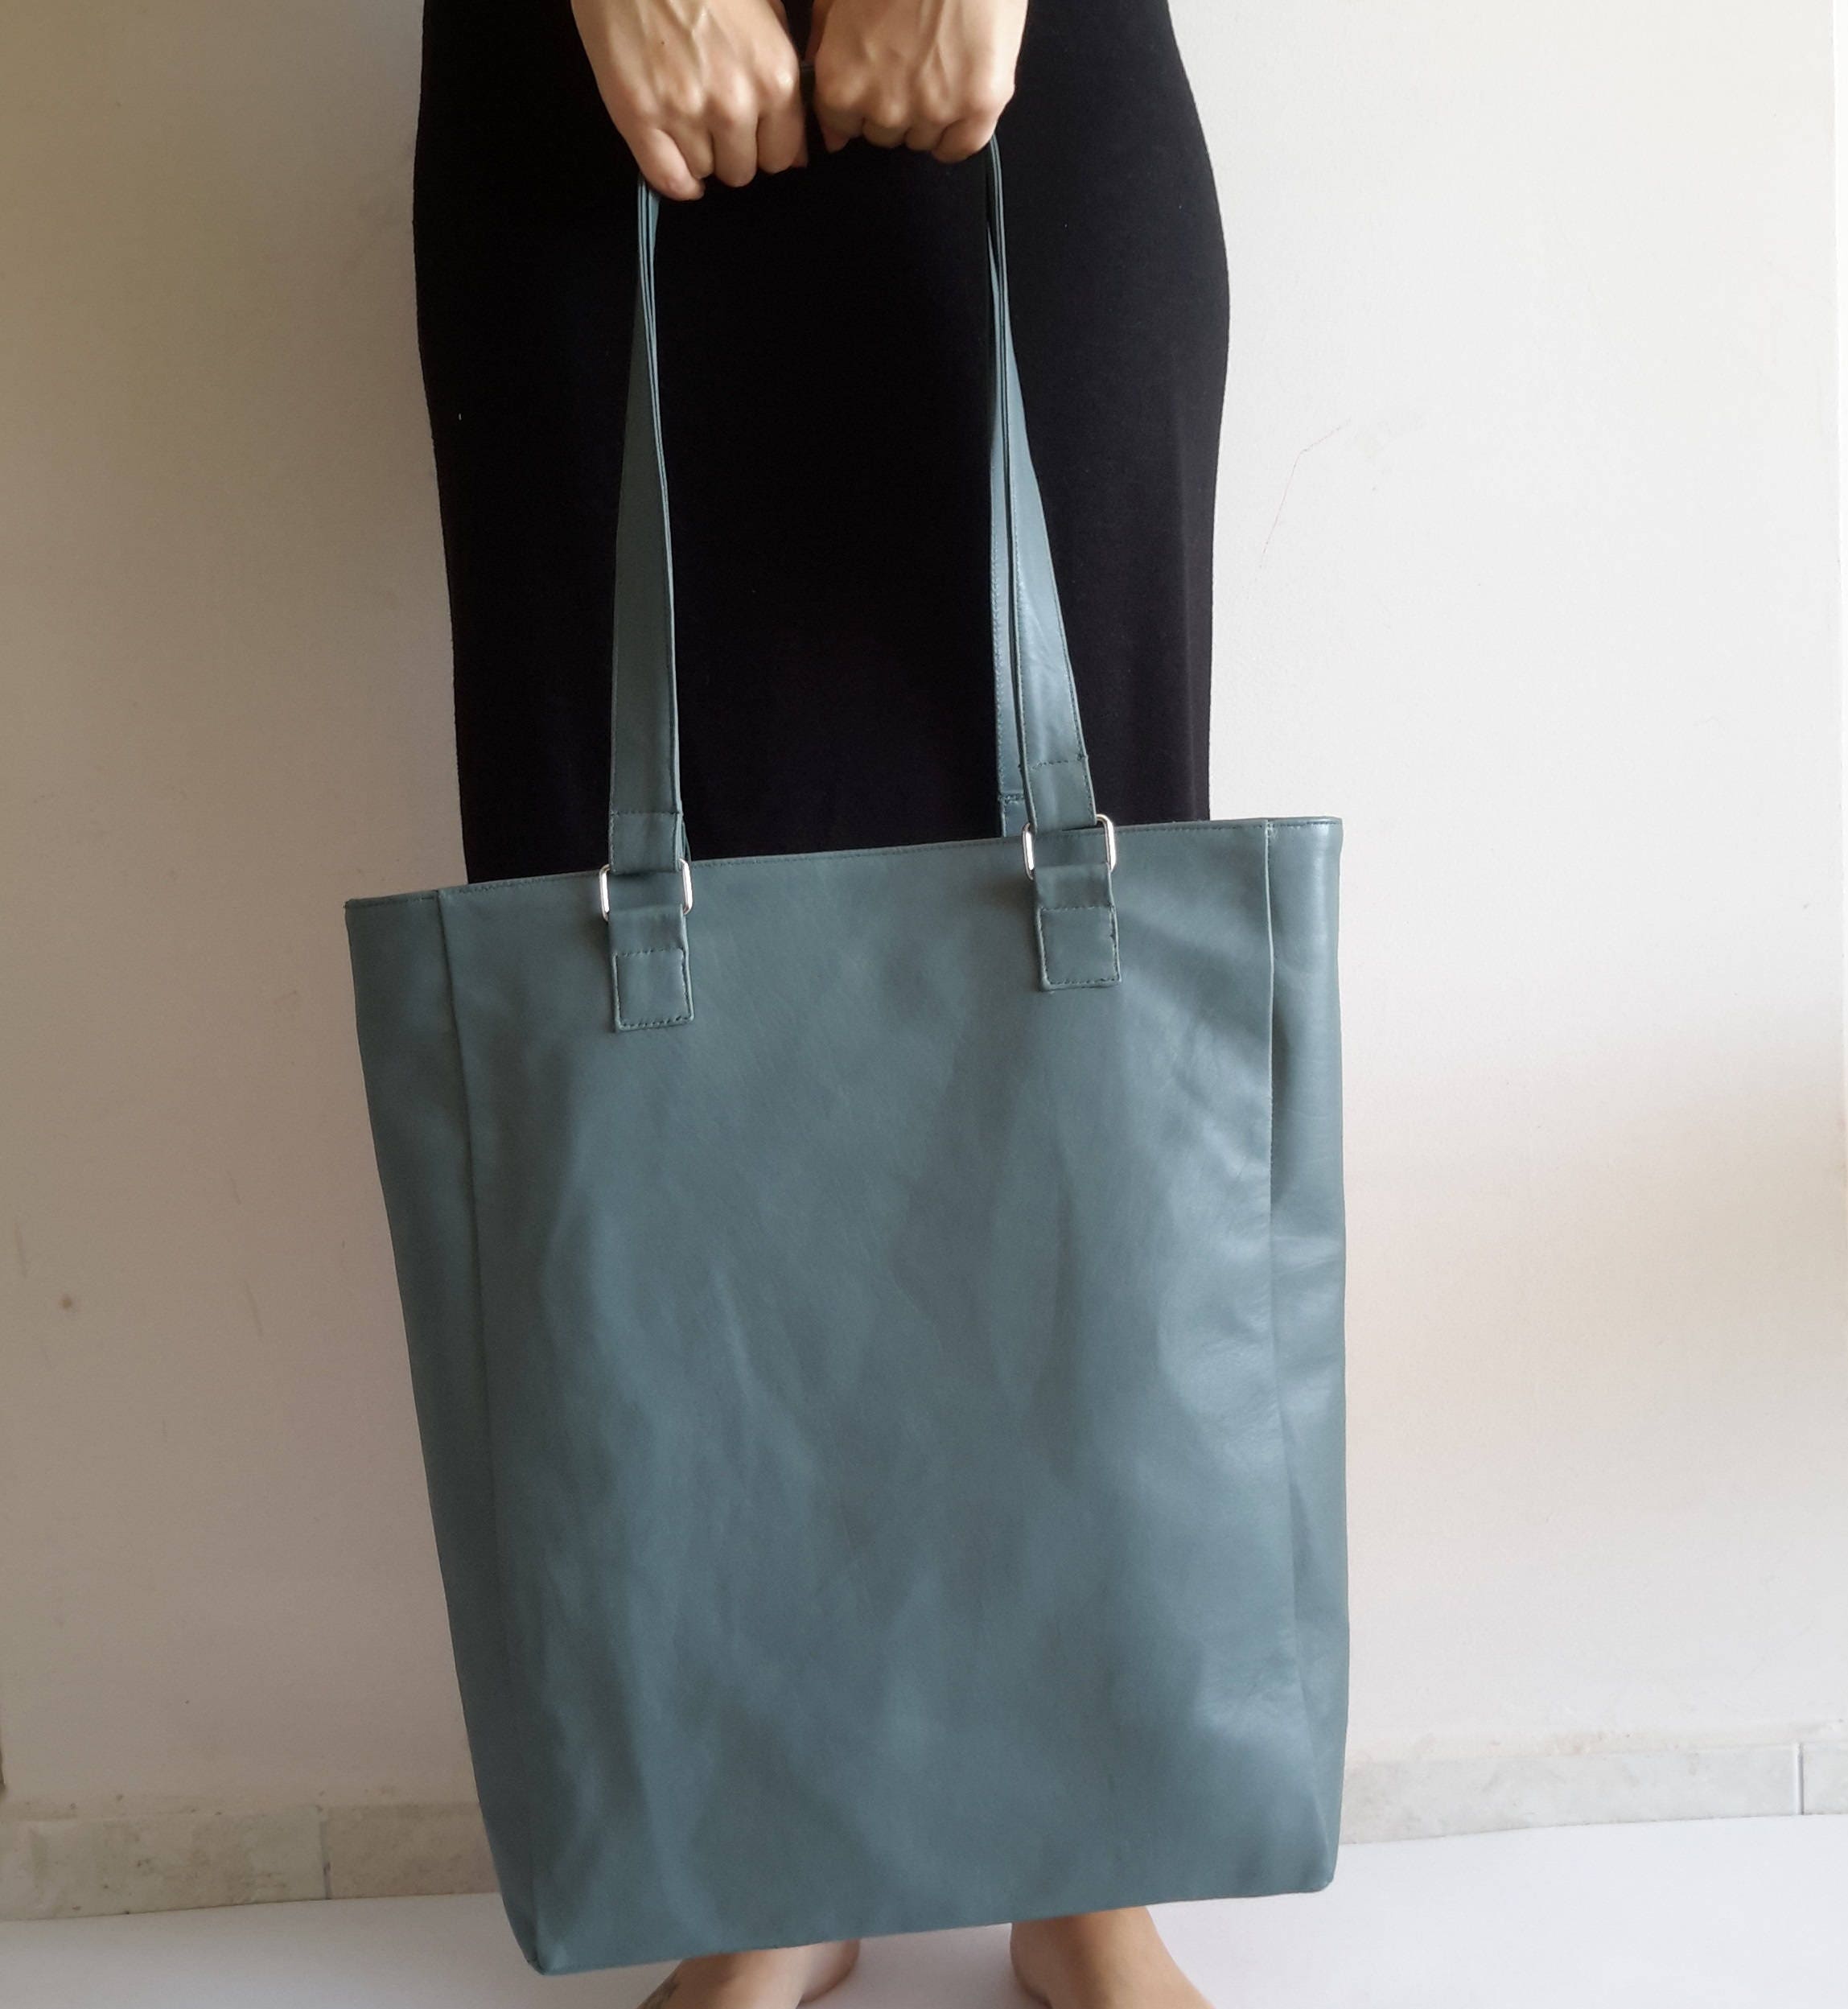 Oversized tote bag Bag for Women Weekend bag Travel bag | Etsy